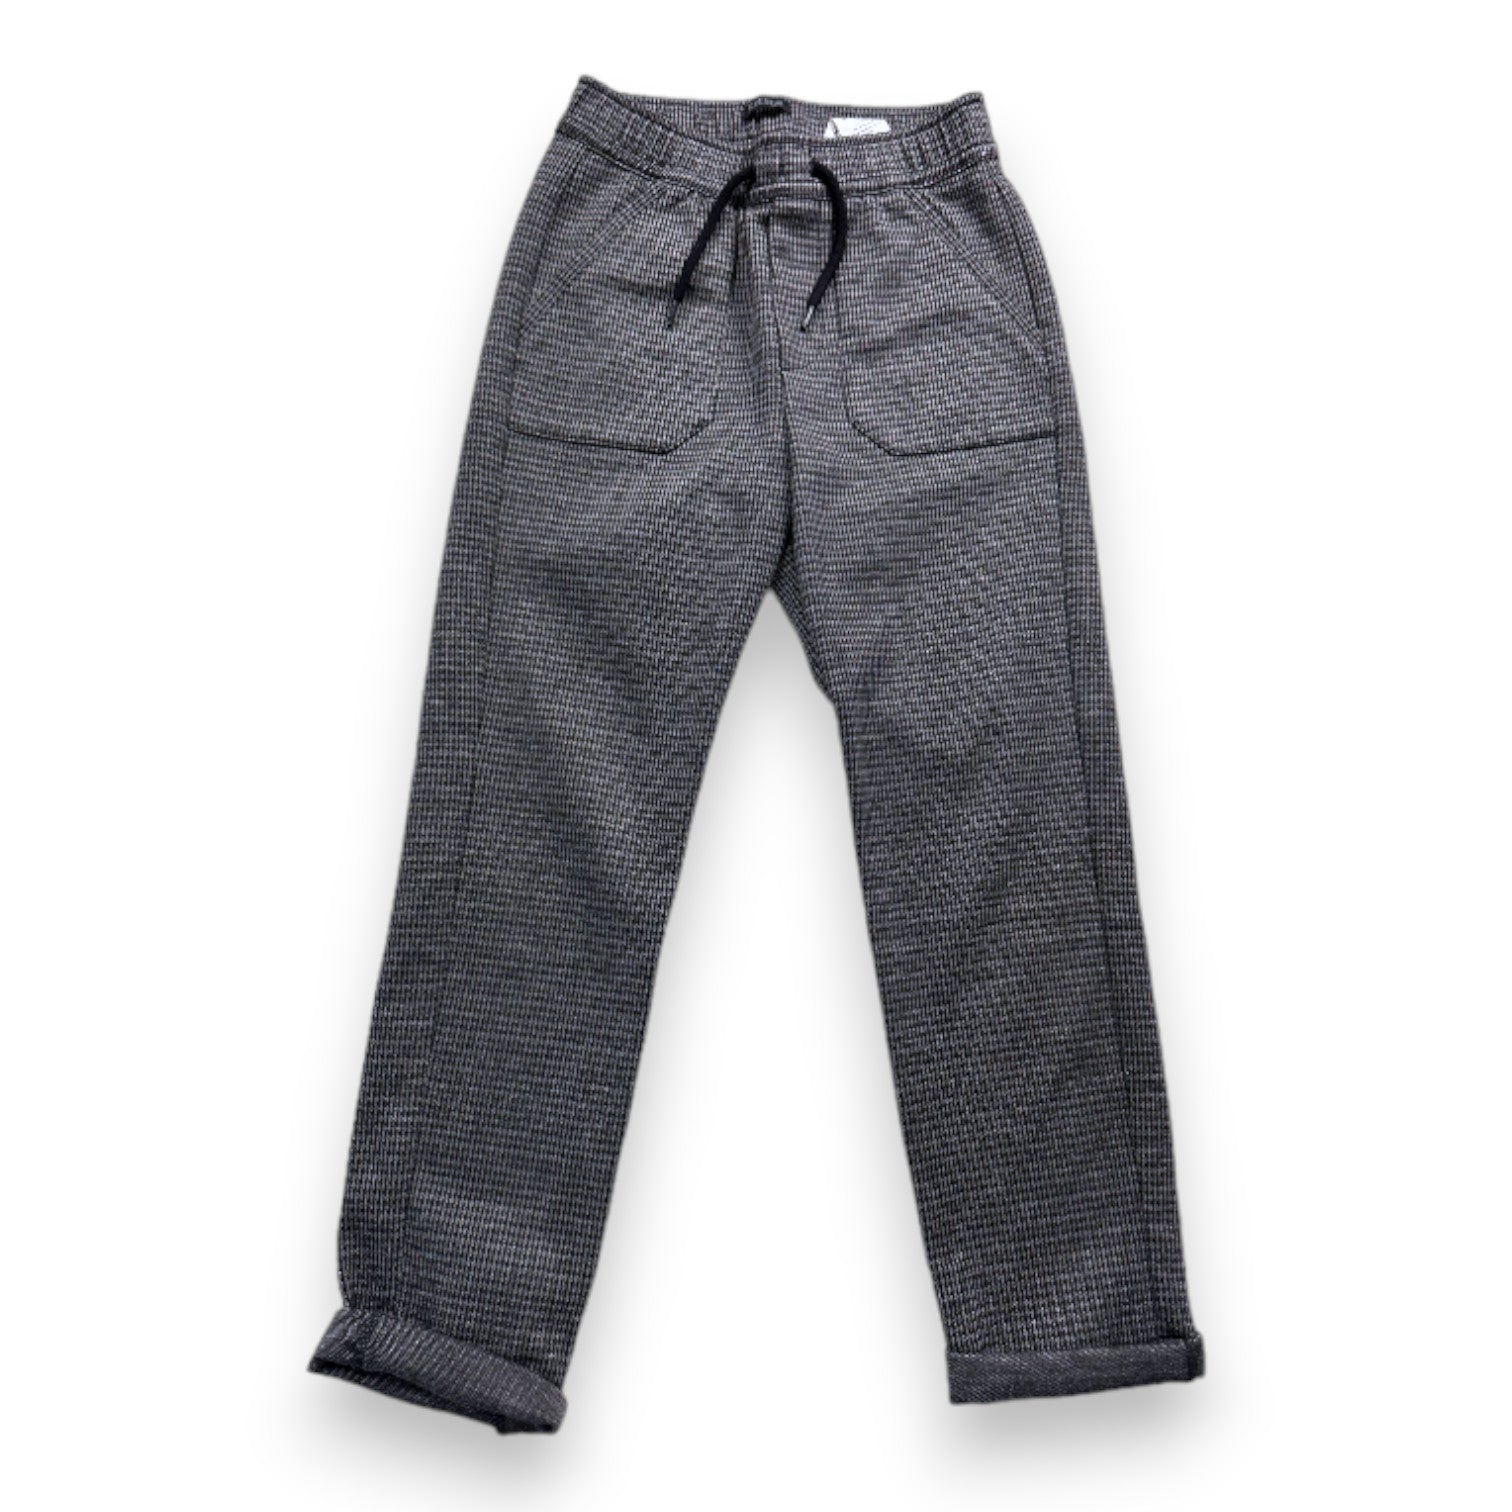 IKKS - Pantalon gris et noir - 8 ans